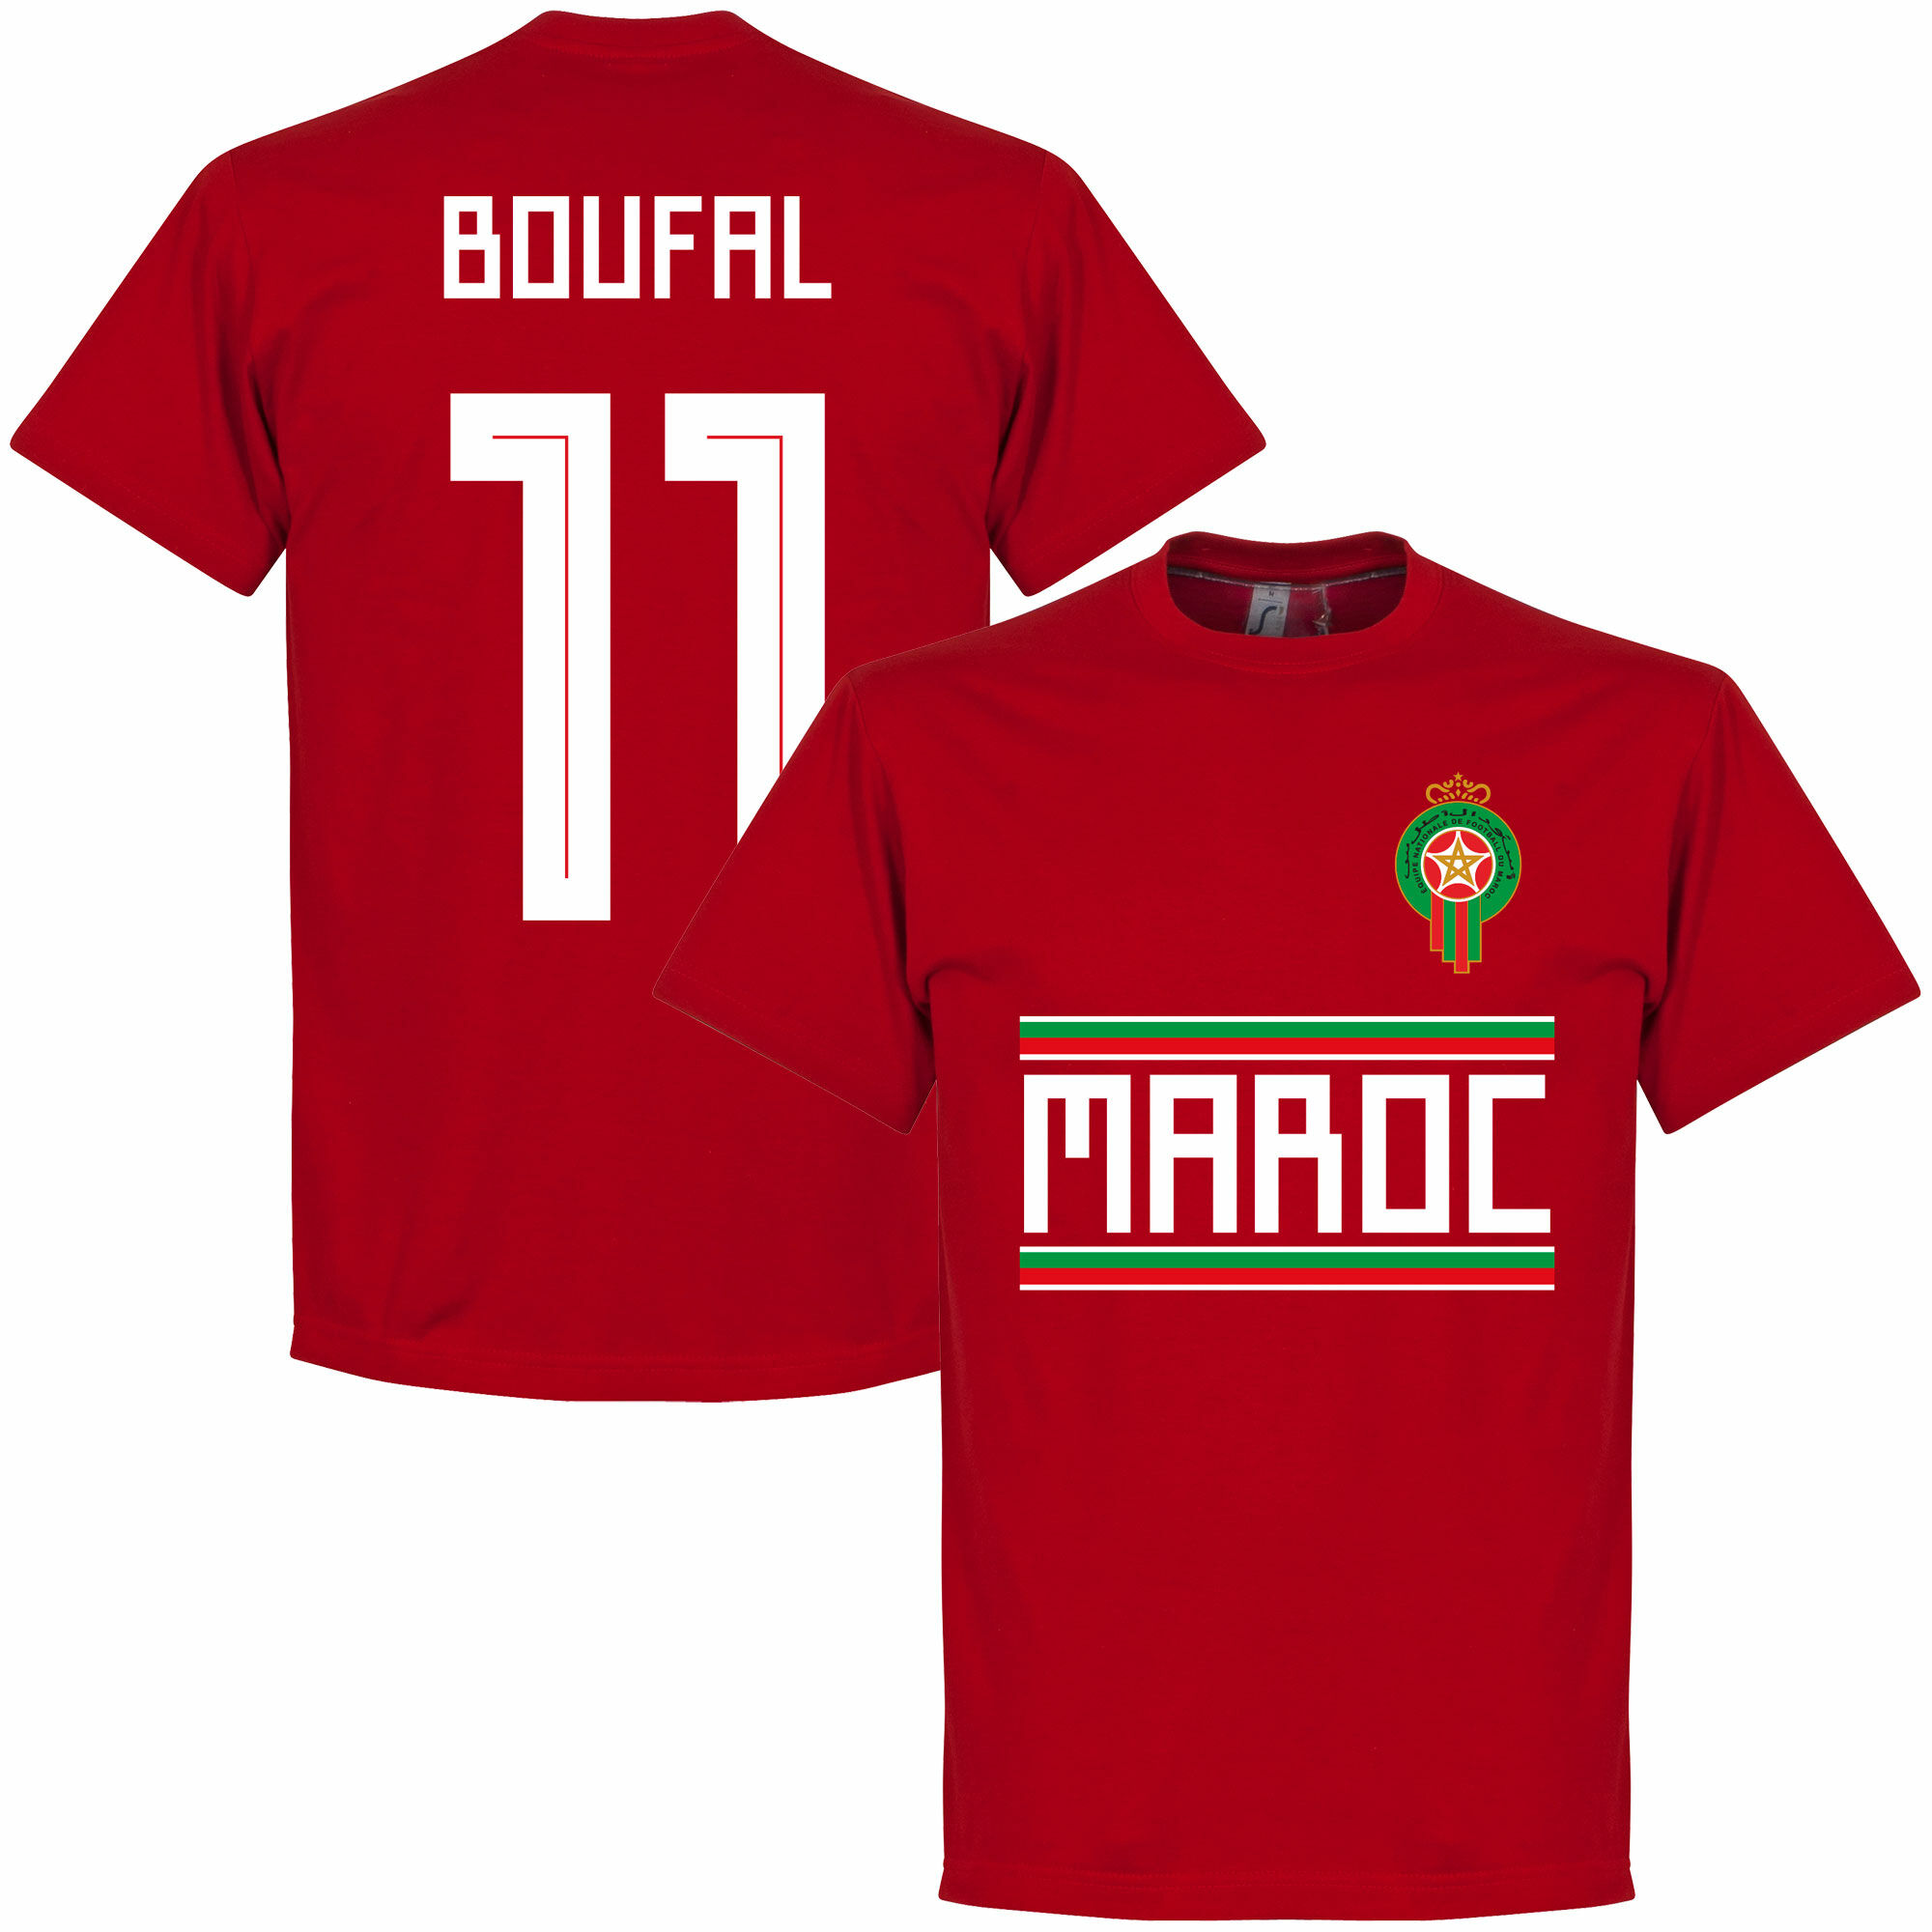 Maroko - Tričko - červené, Sofiane Boufal, číslo 11